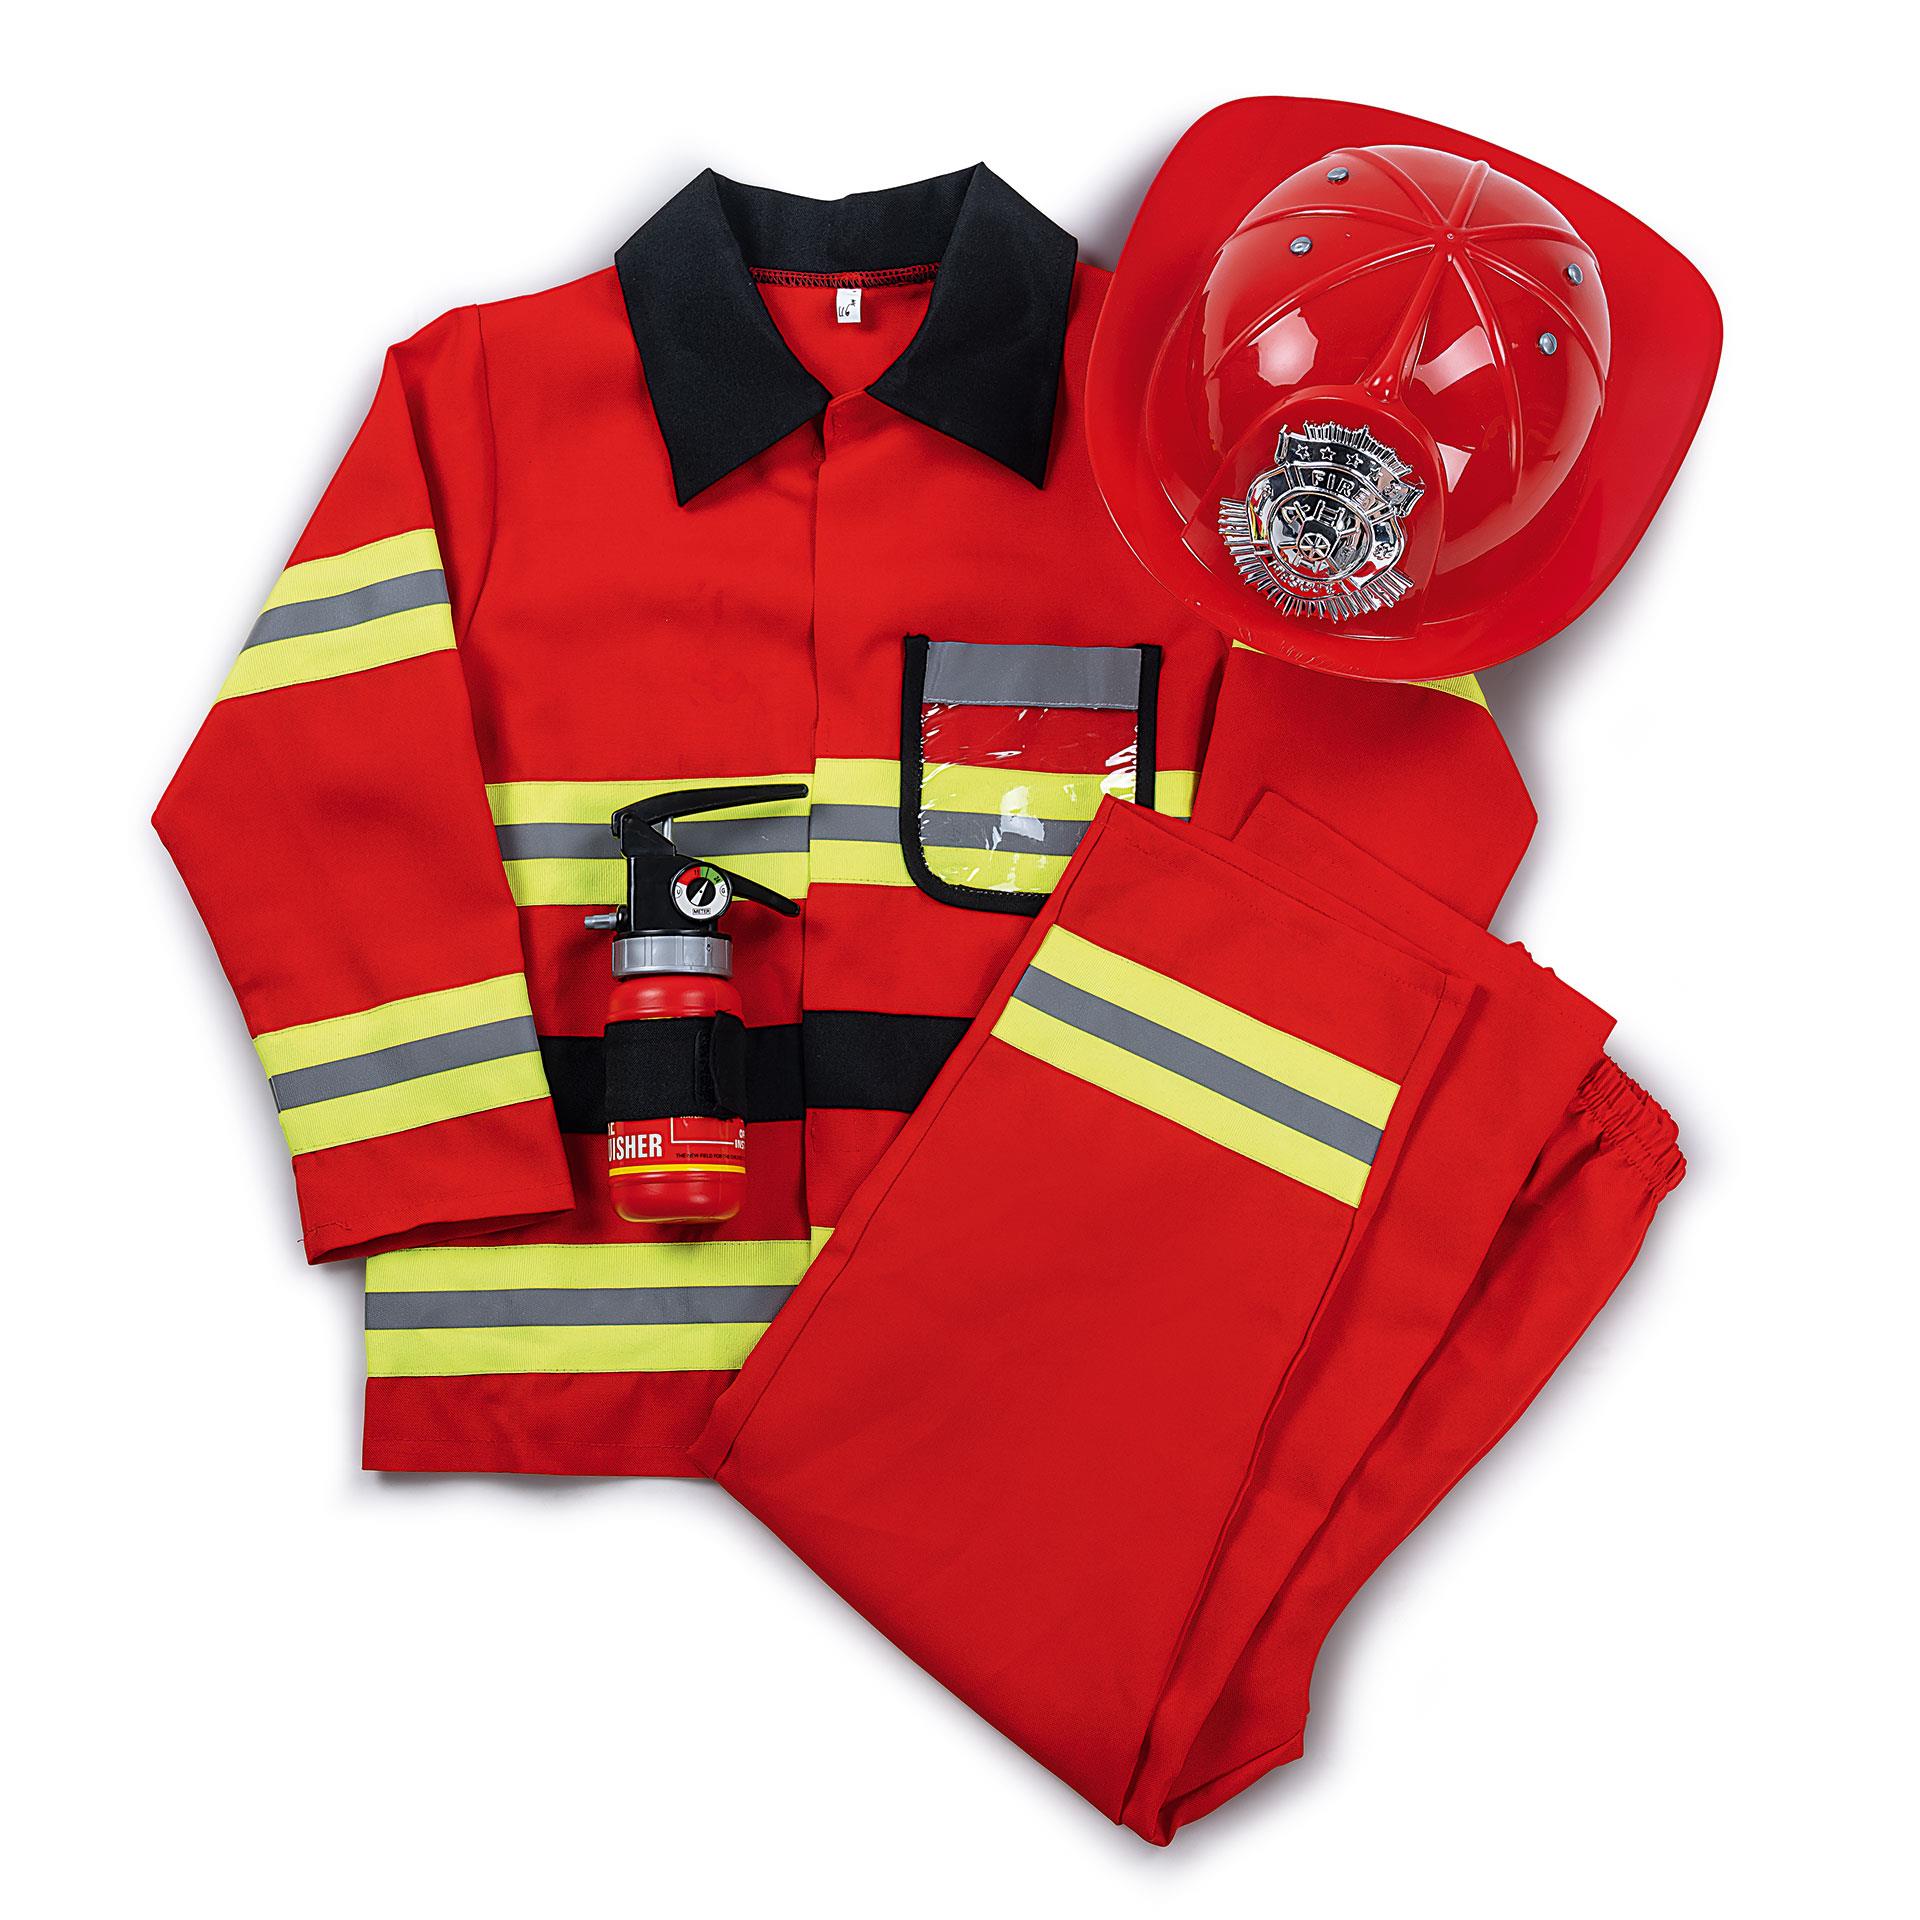 Kind in Feuerwehrmann Kostüm